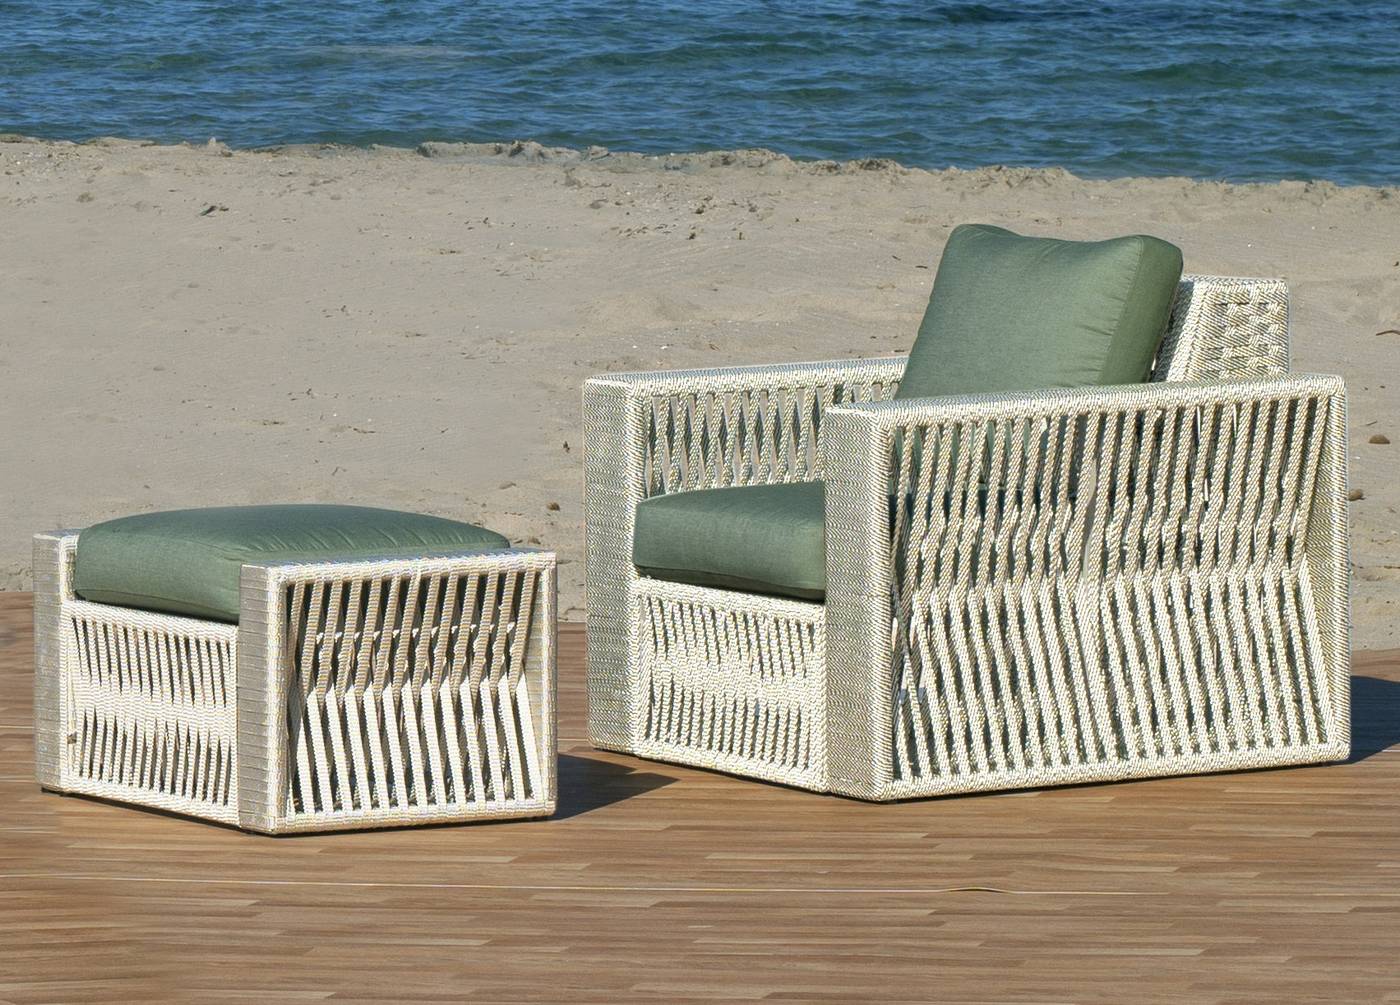 Set Aluminio Prusia-10 - Conjunto aluminio-cuerda: 1 sofá de 3 plazas + 2 sillones + 1 mesa de centro + 2 taburetes + cojines. Disponible en color blanco, gris, oro o champagne.